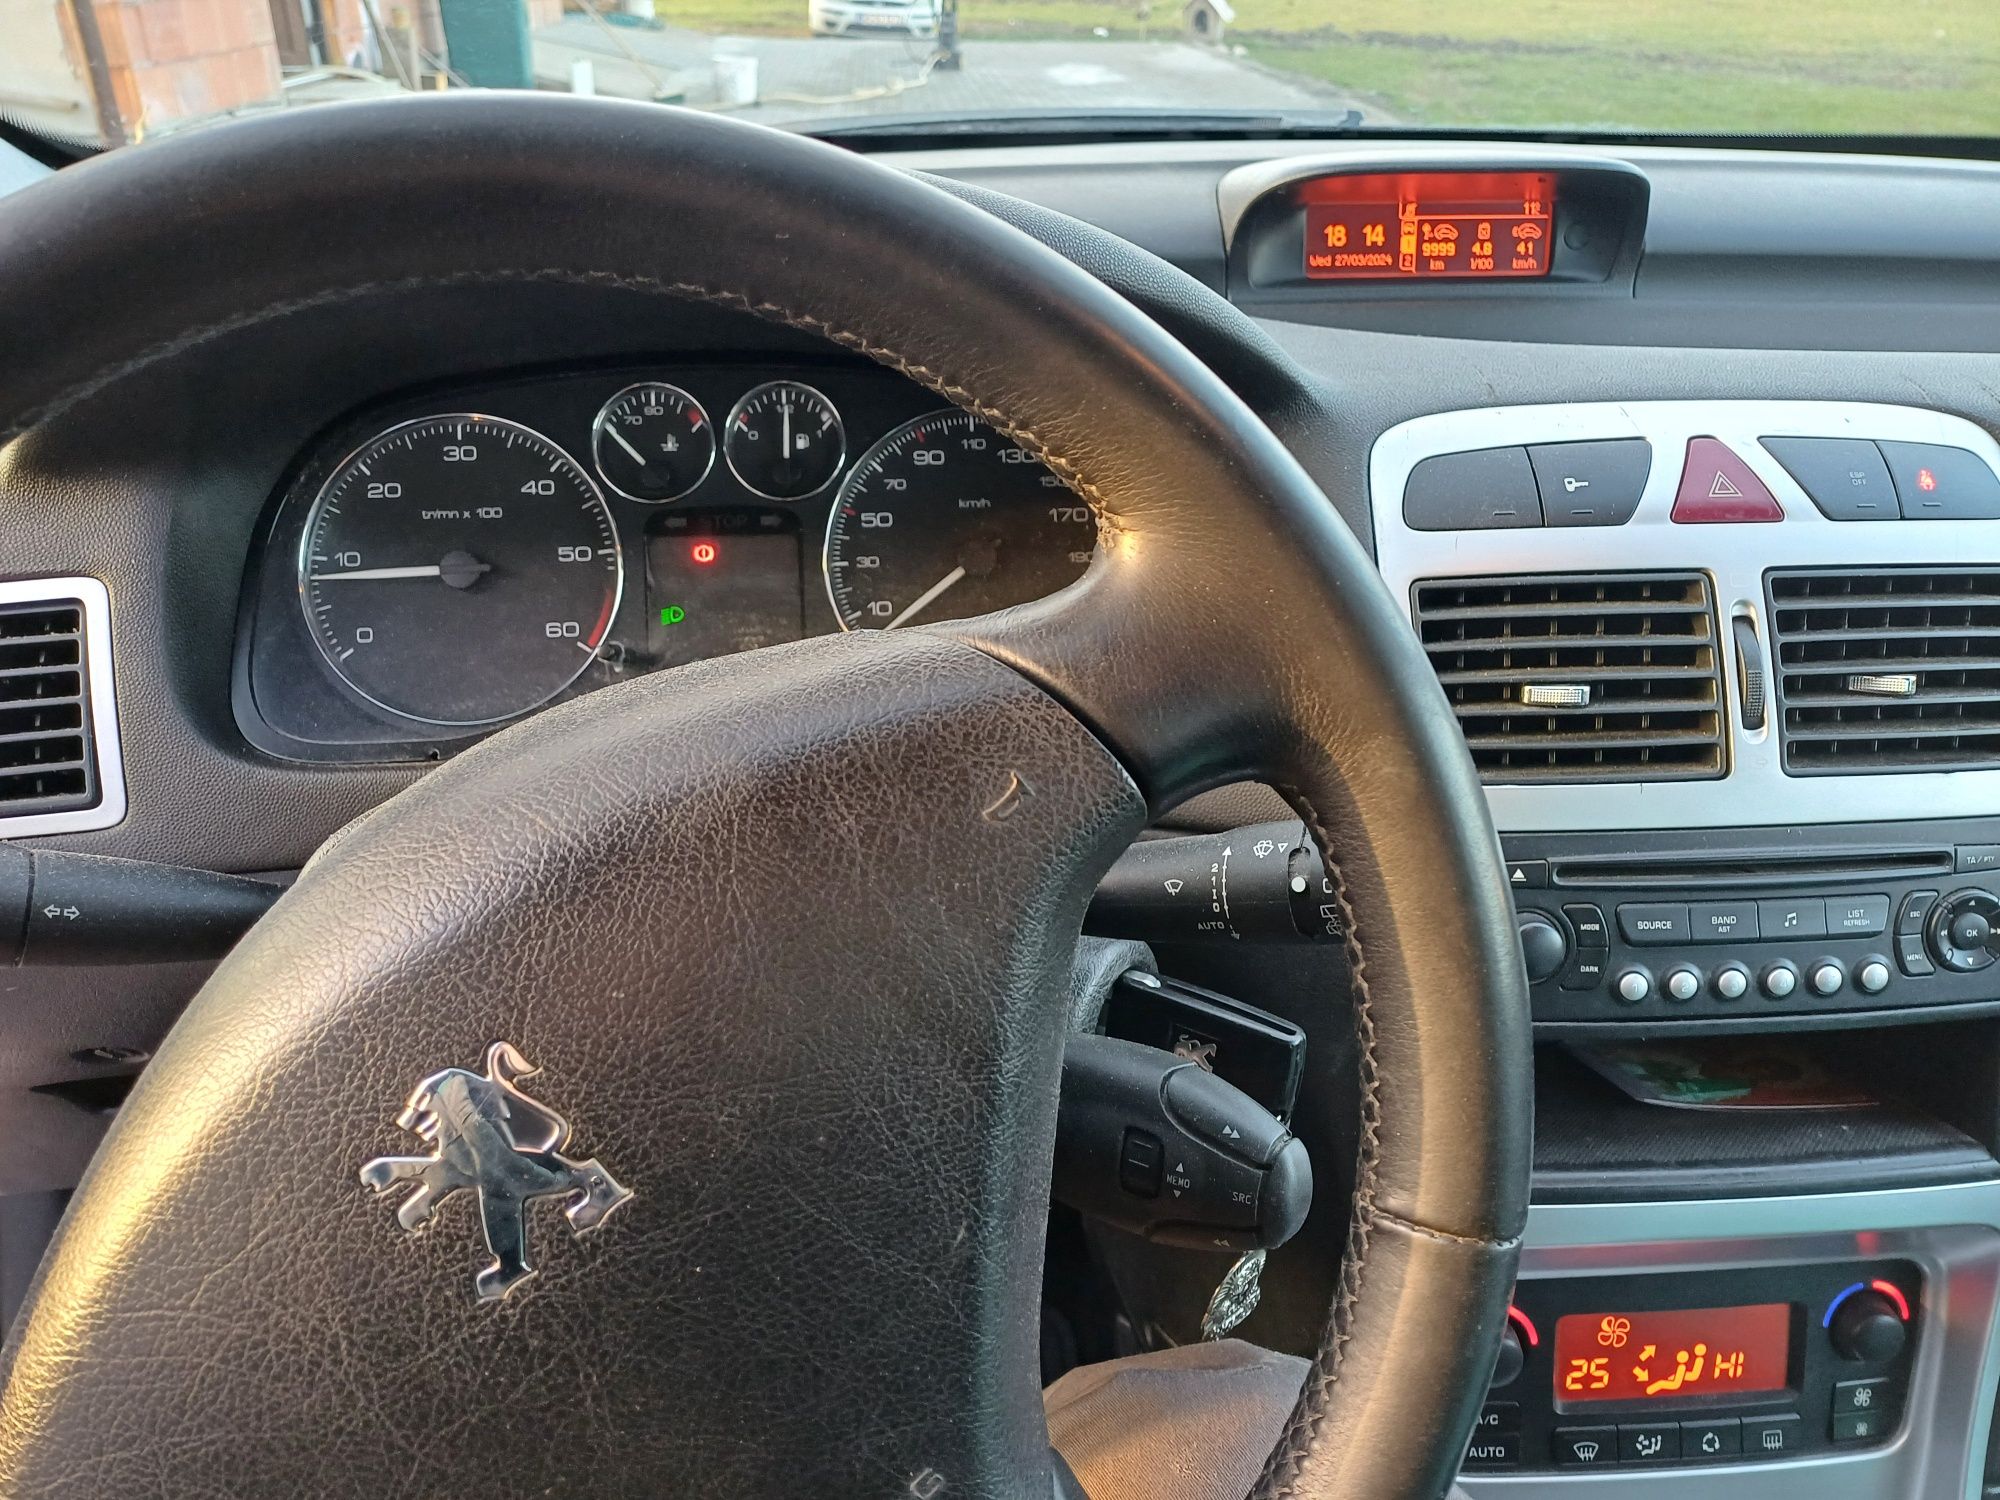 Peugeot 307 face lift